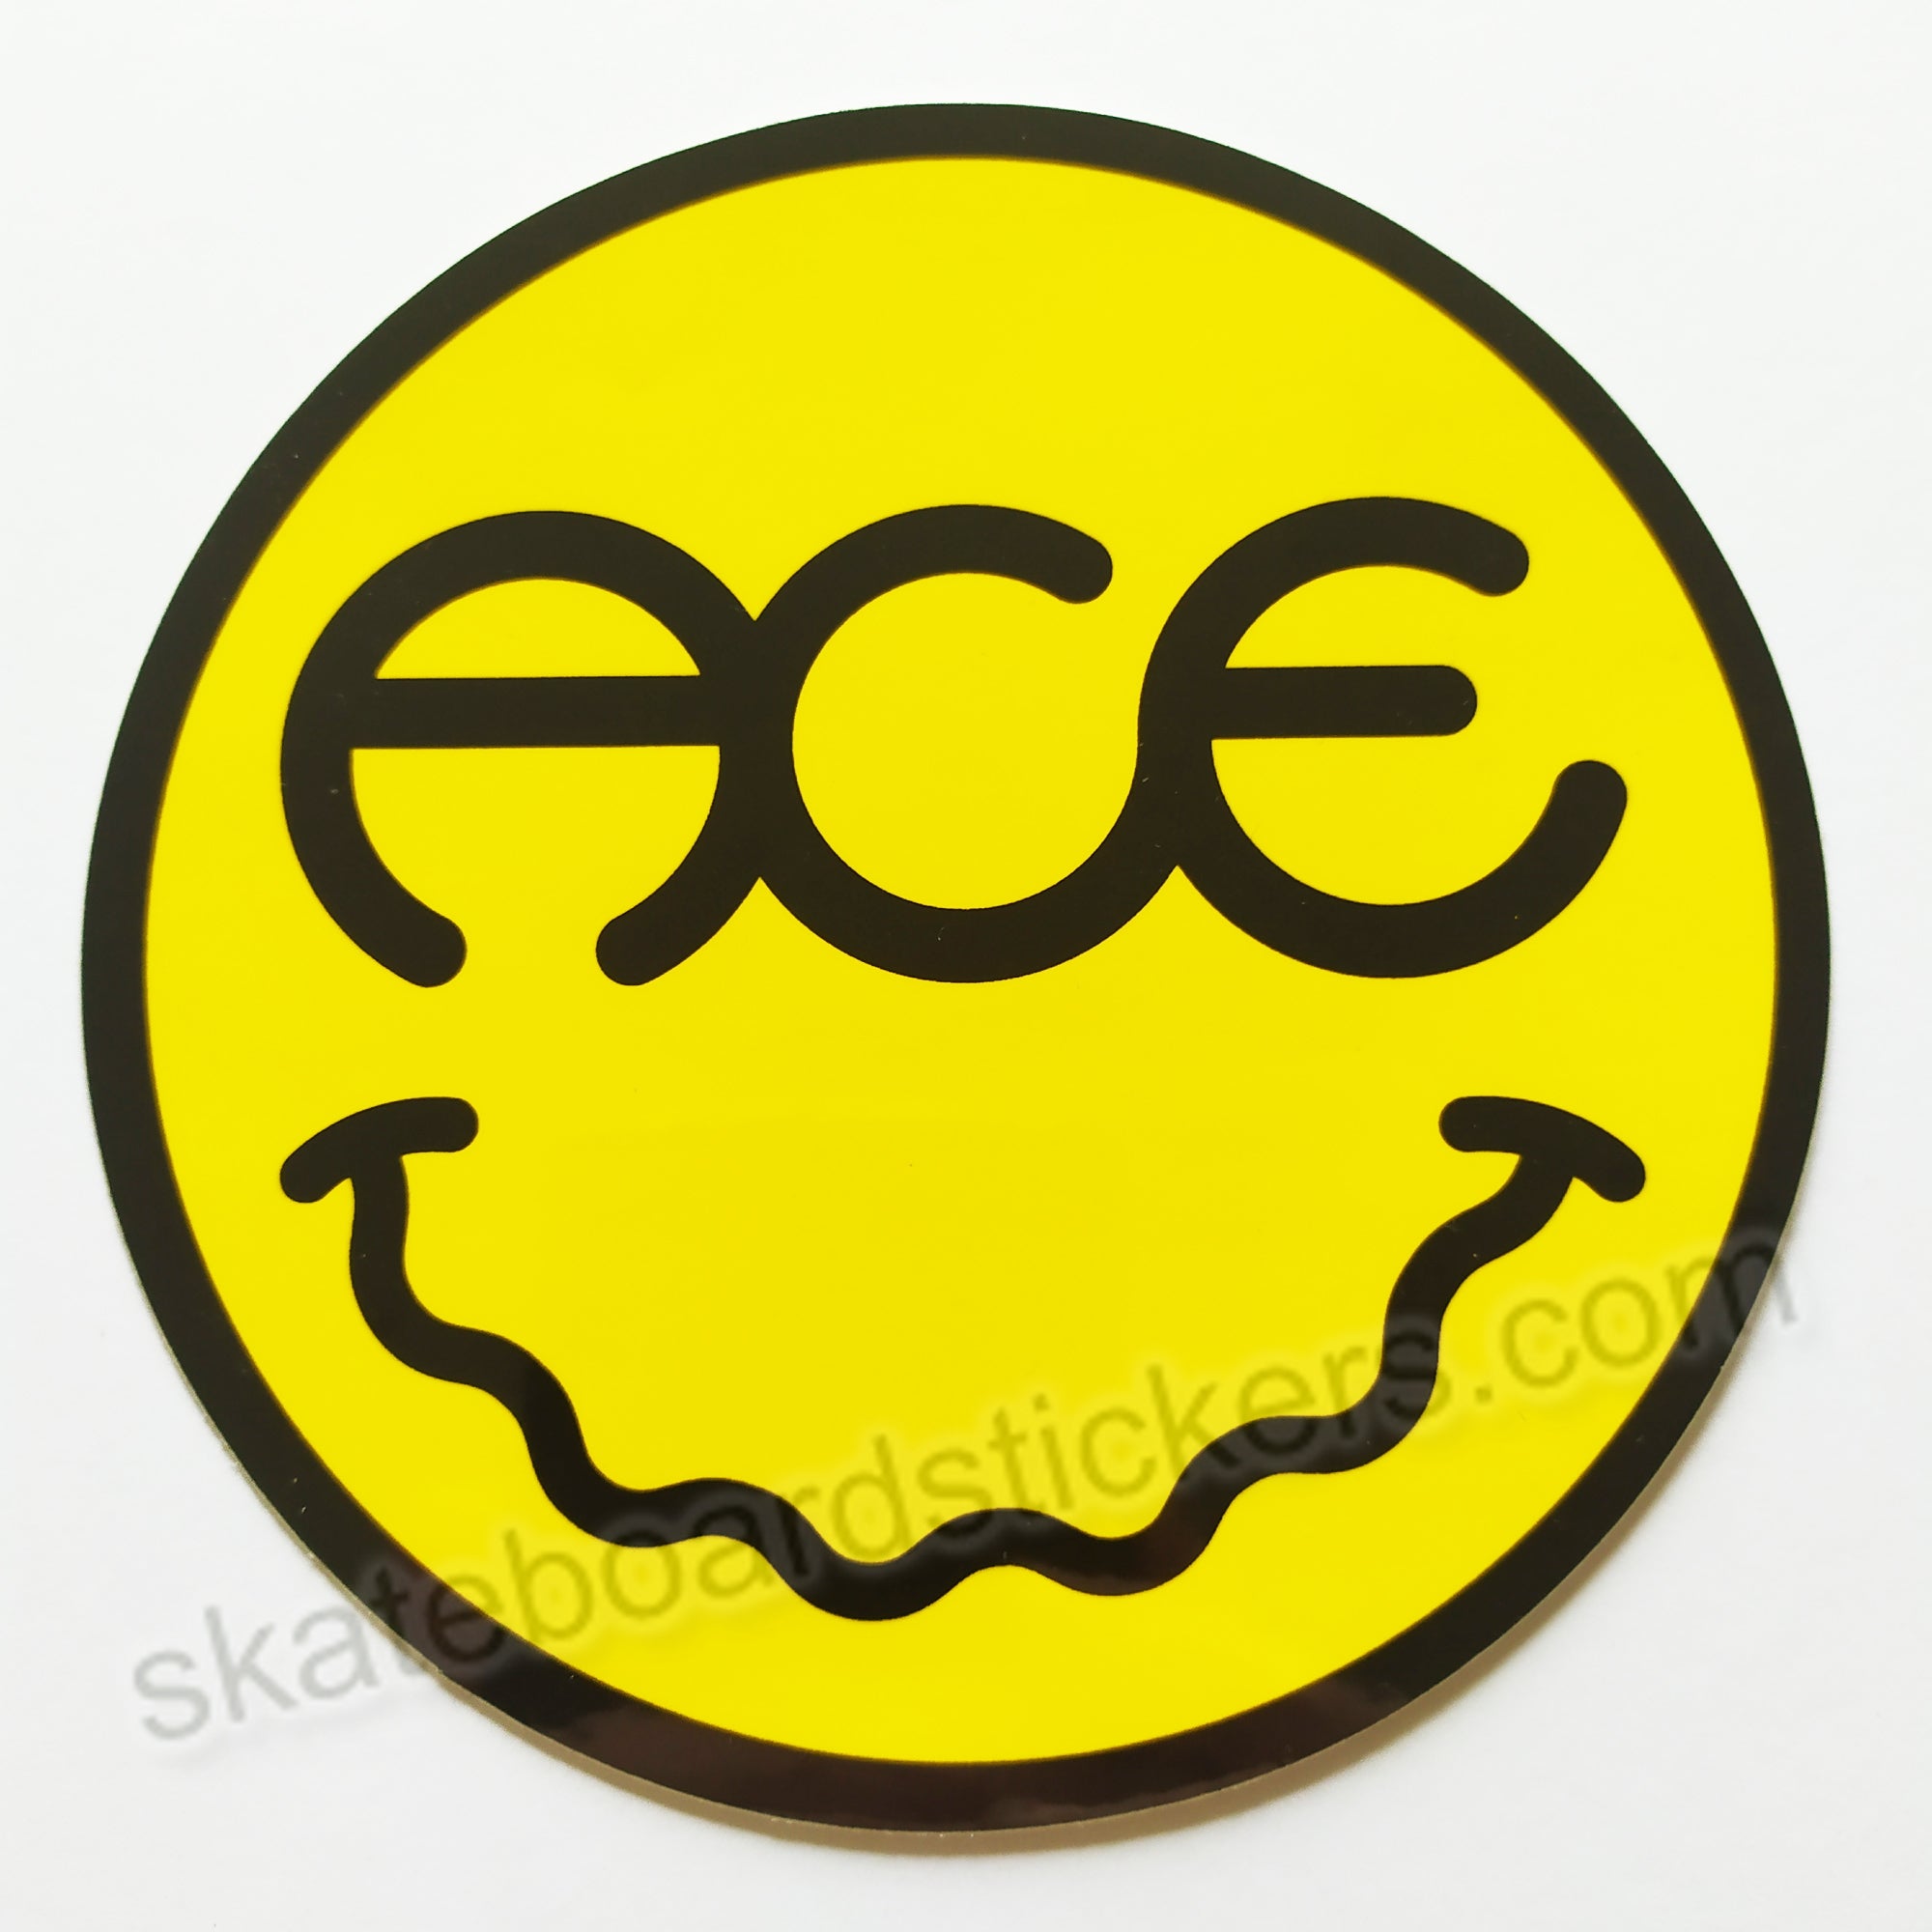 Ace Trucks Skateboard Sticker - Baked Smile